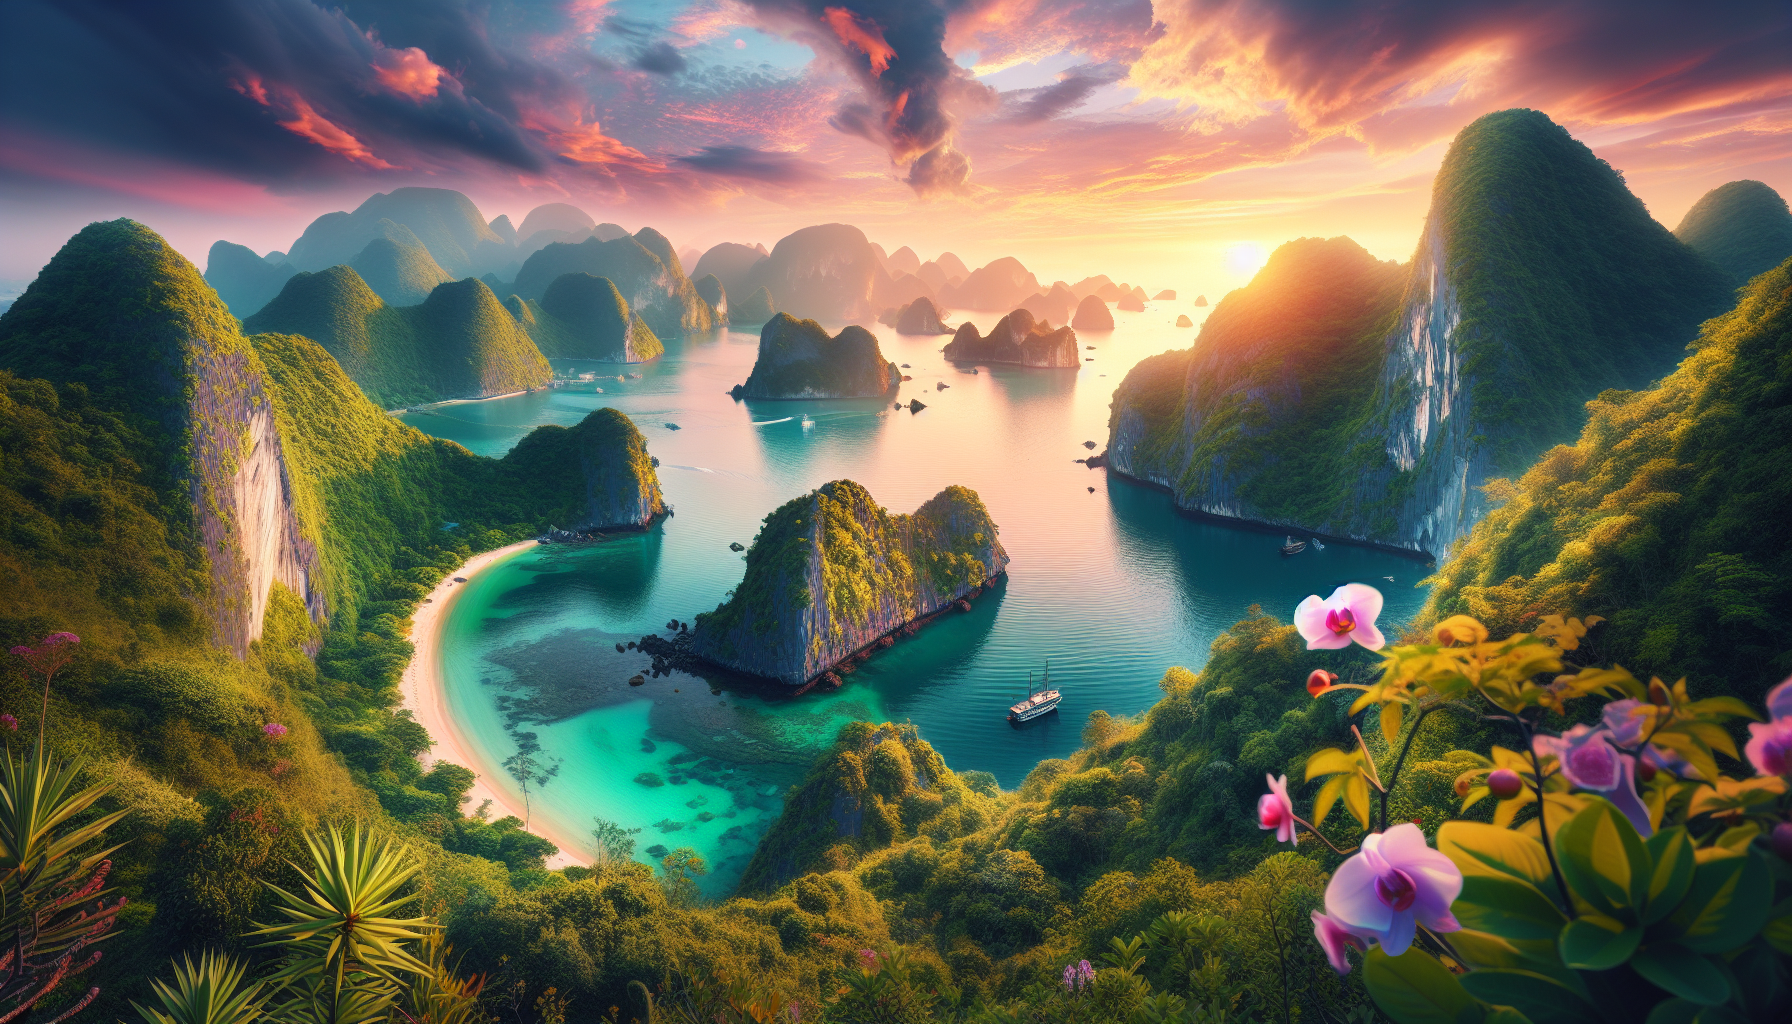 Cát Bà là một hòn đảo nằm trong Vịnh Hạ Long, thuộc Quảng Ninh, nổi tiếng với cảnh quan thiên nhiên tuyệt đẹp và đa dạng sinh học.